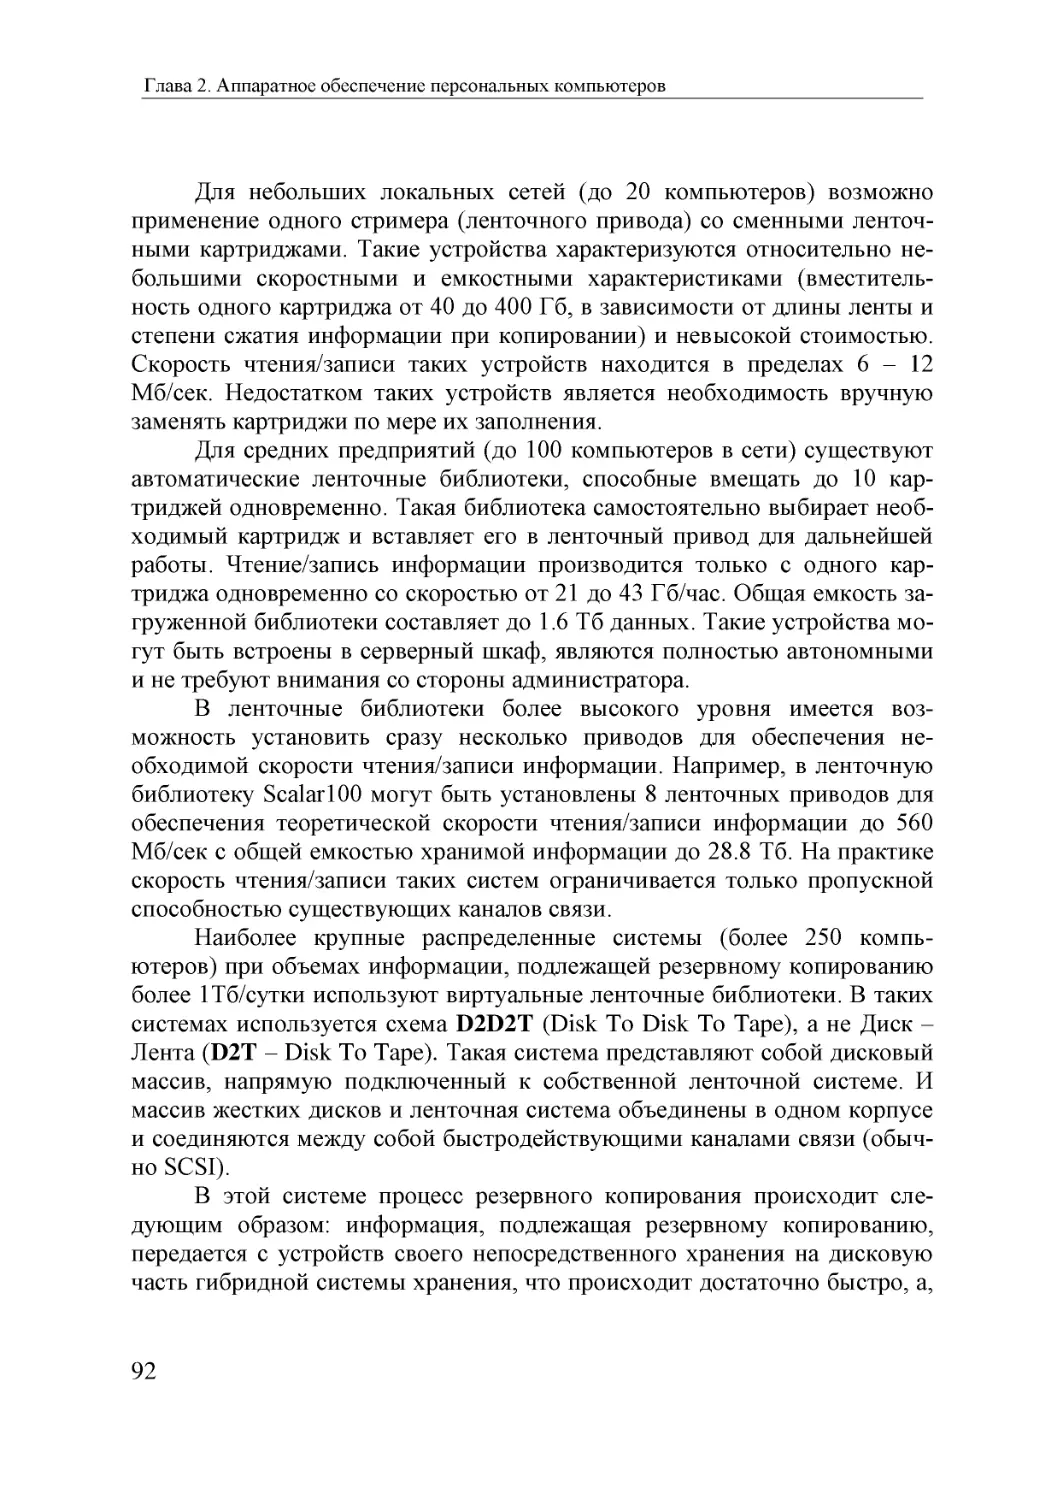 Informatika_Uchebnik_dlya_vuzov_2010 92